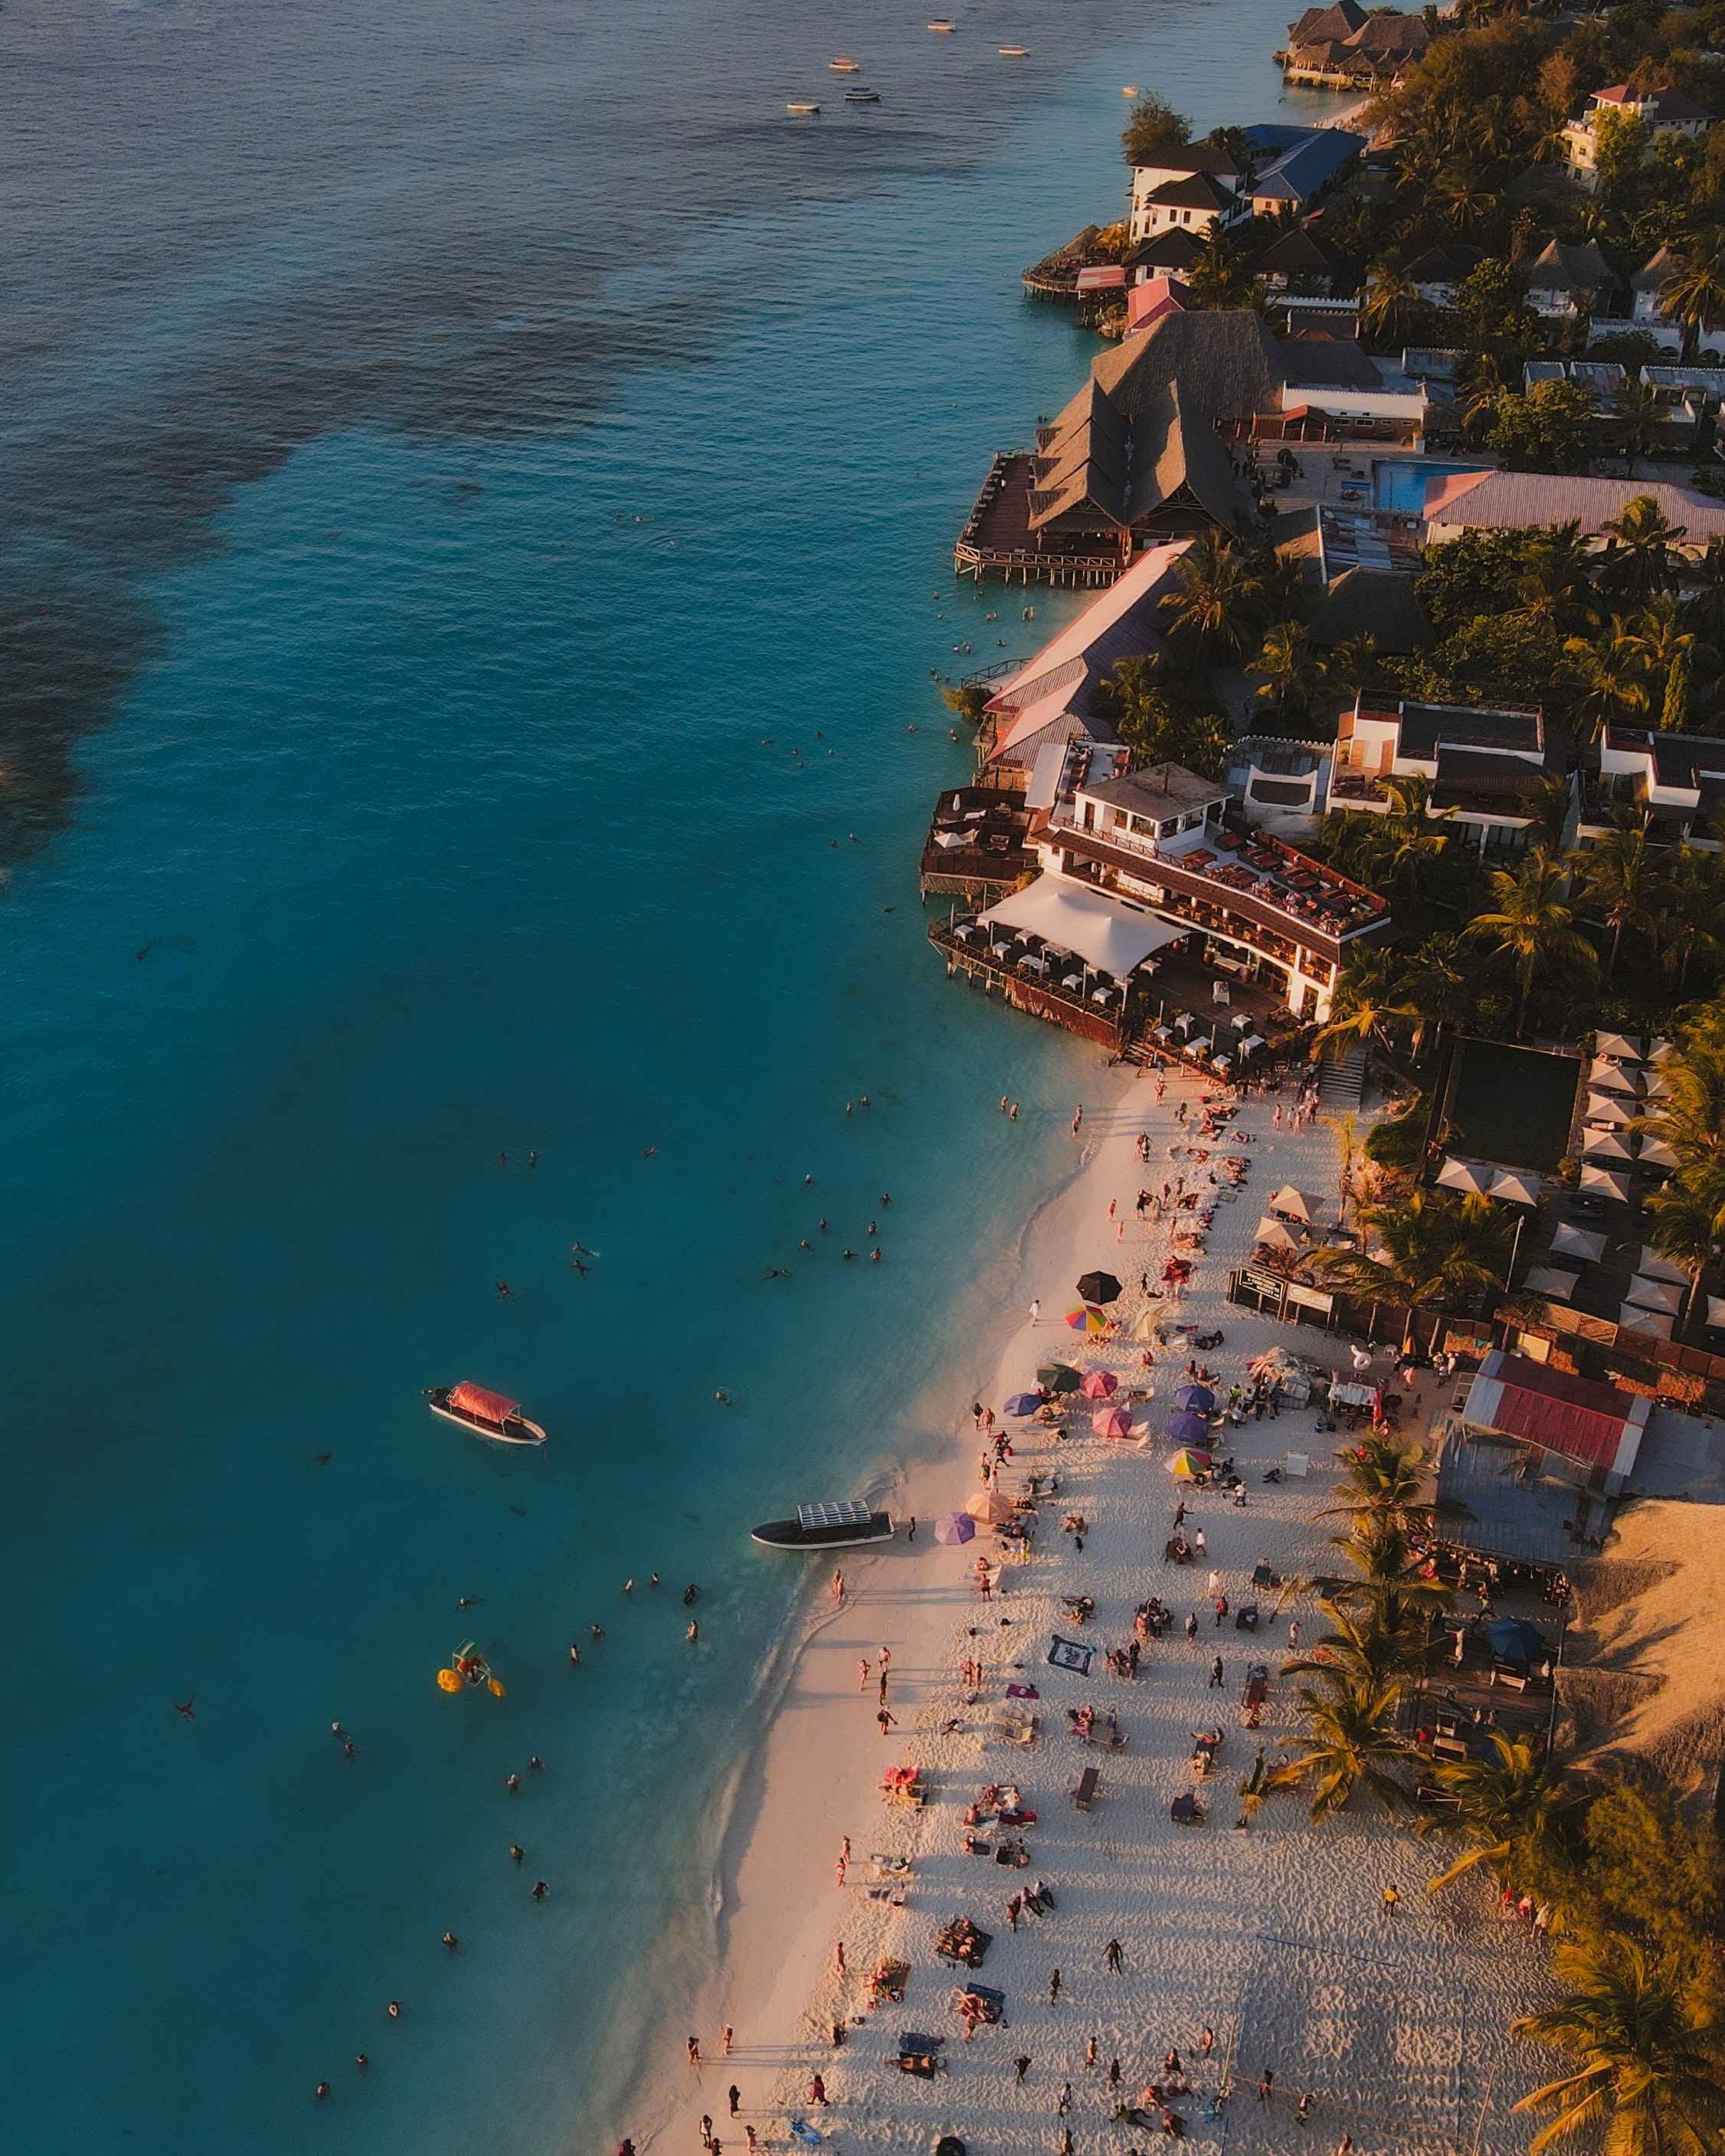 Hotels at the beachfront of Zanzibar